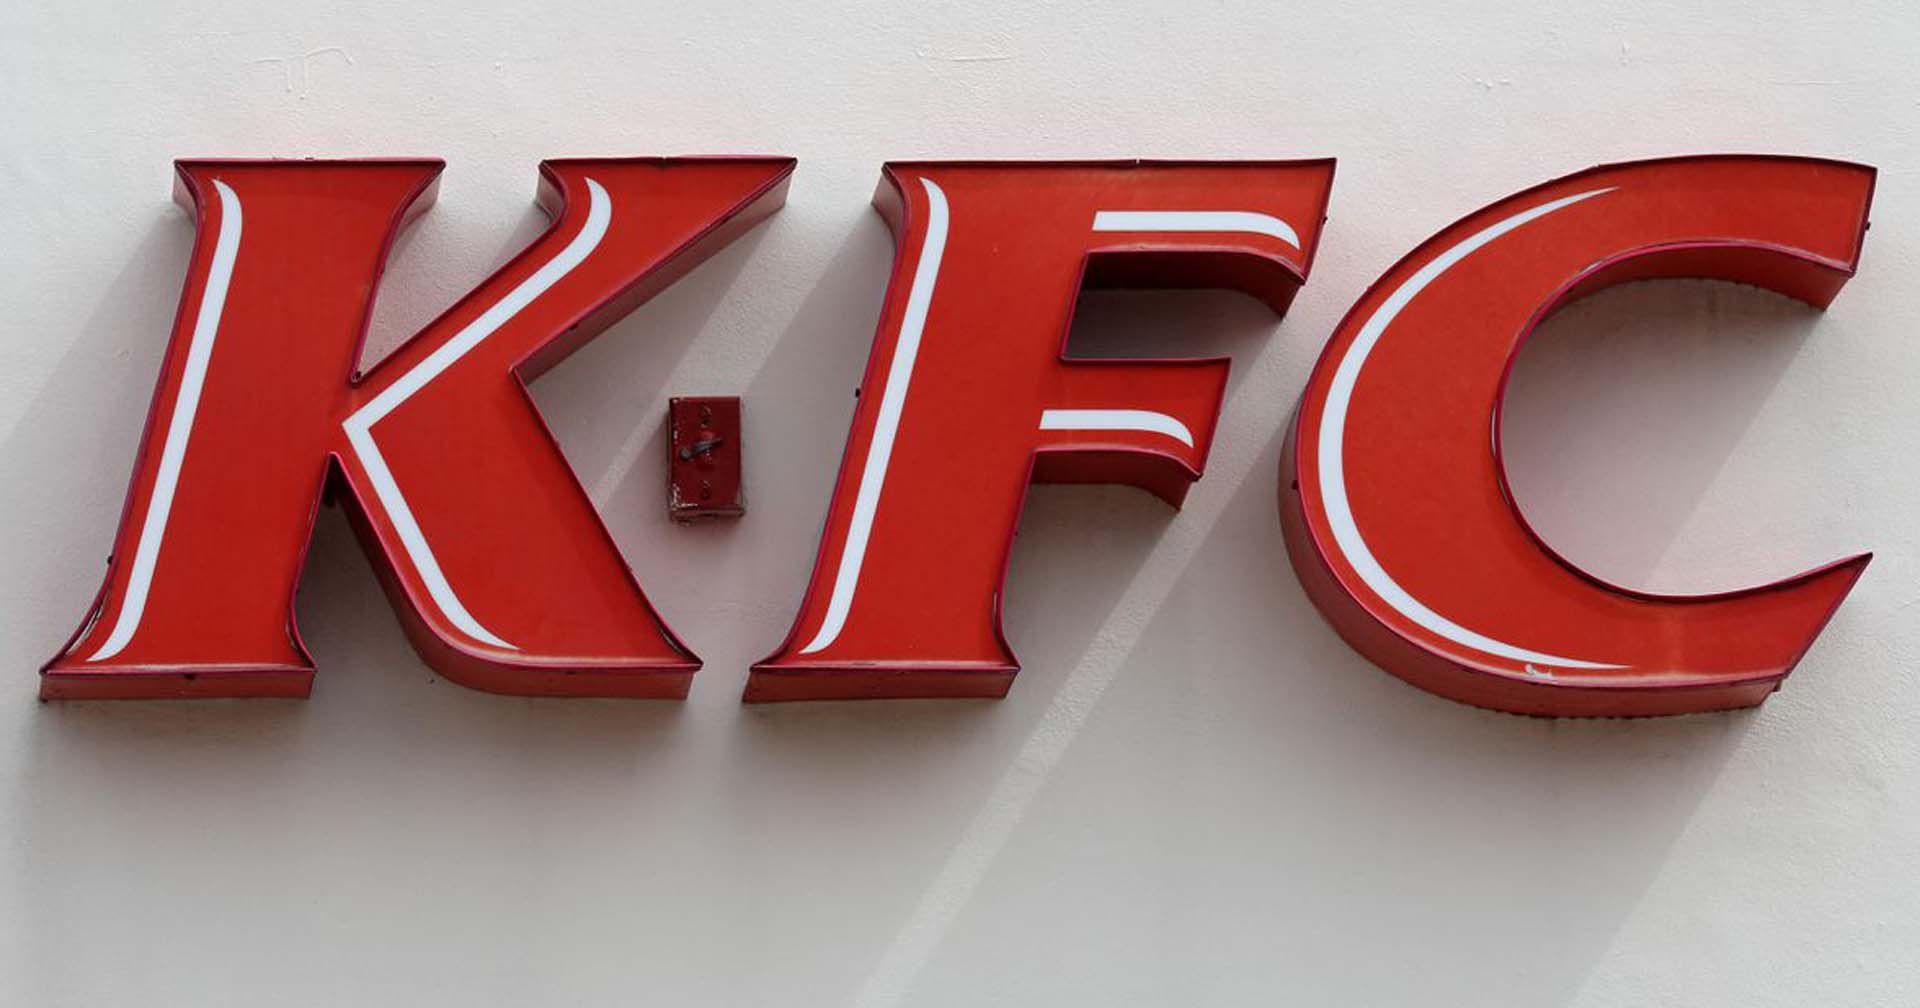 สื่อนอกตีข่าว KFC เตรียมขายกิจการในไทย คิดเป็นมูลค่า 11,000 ล้านบาท